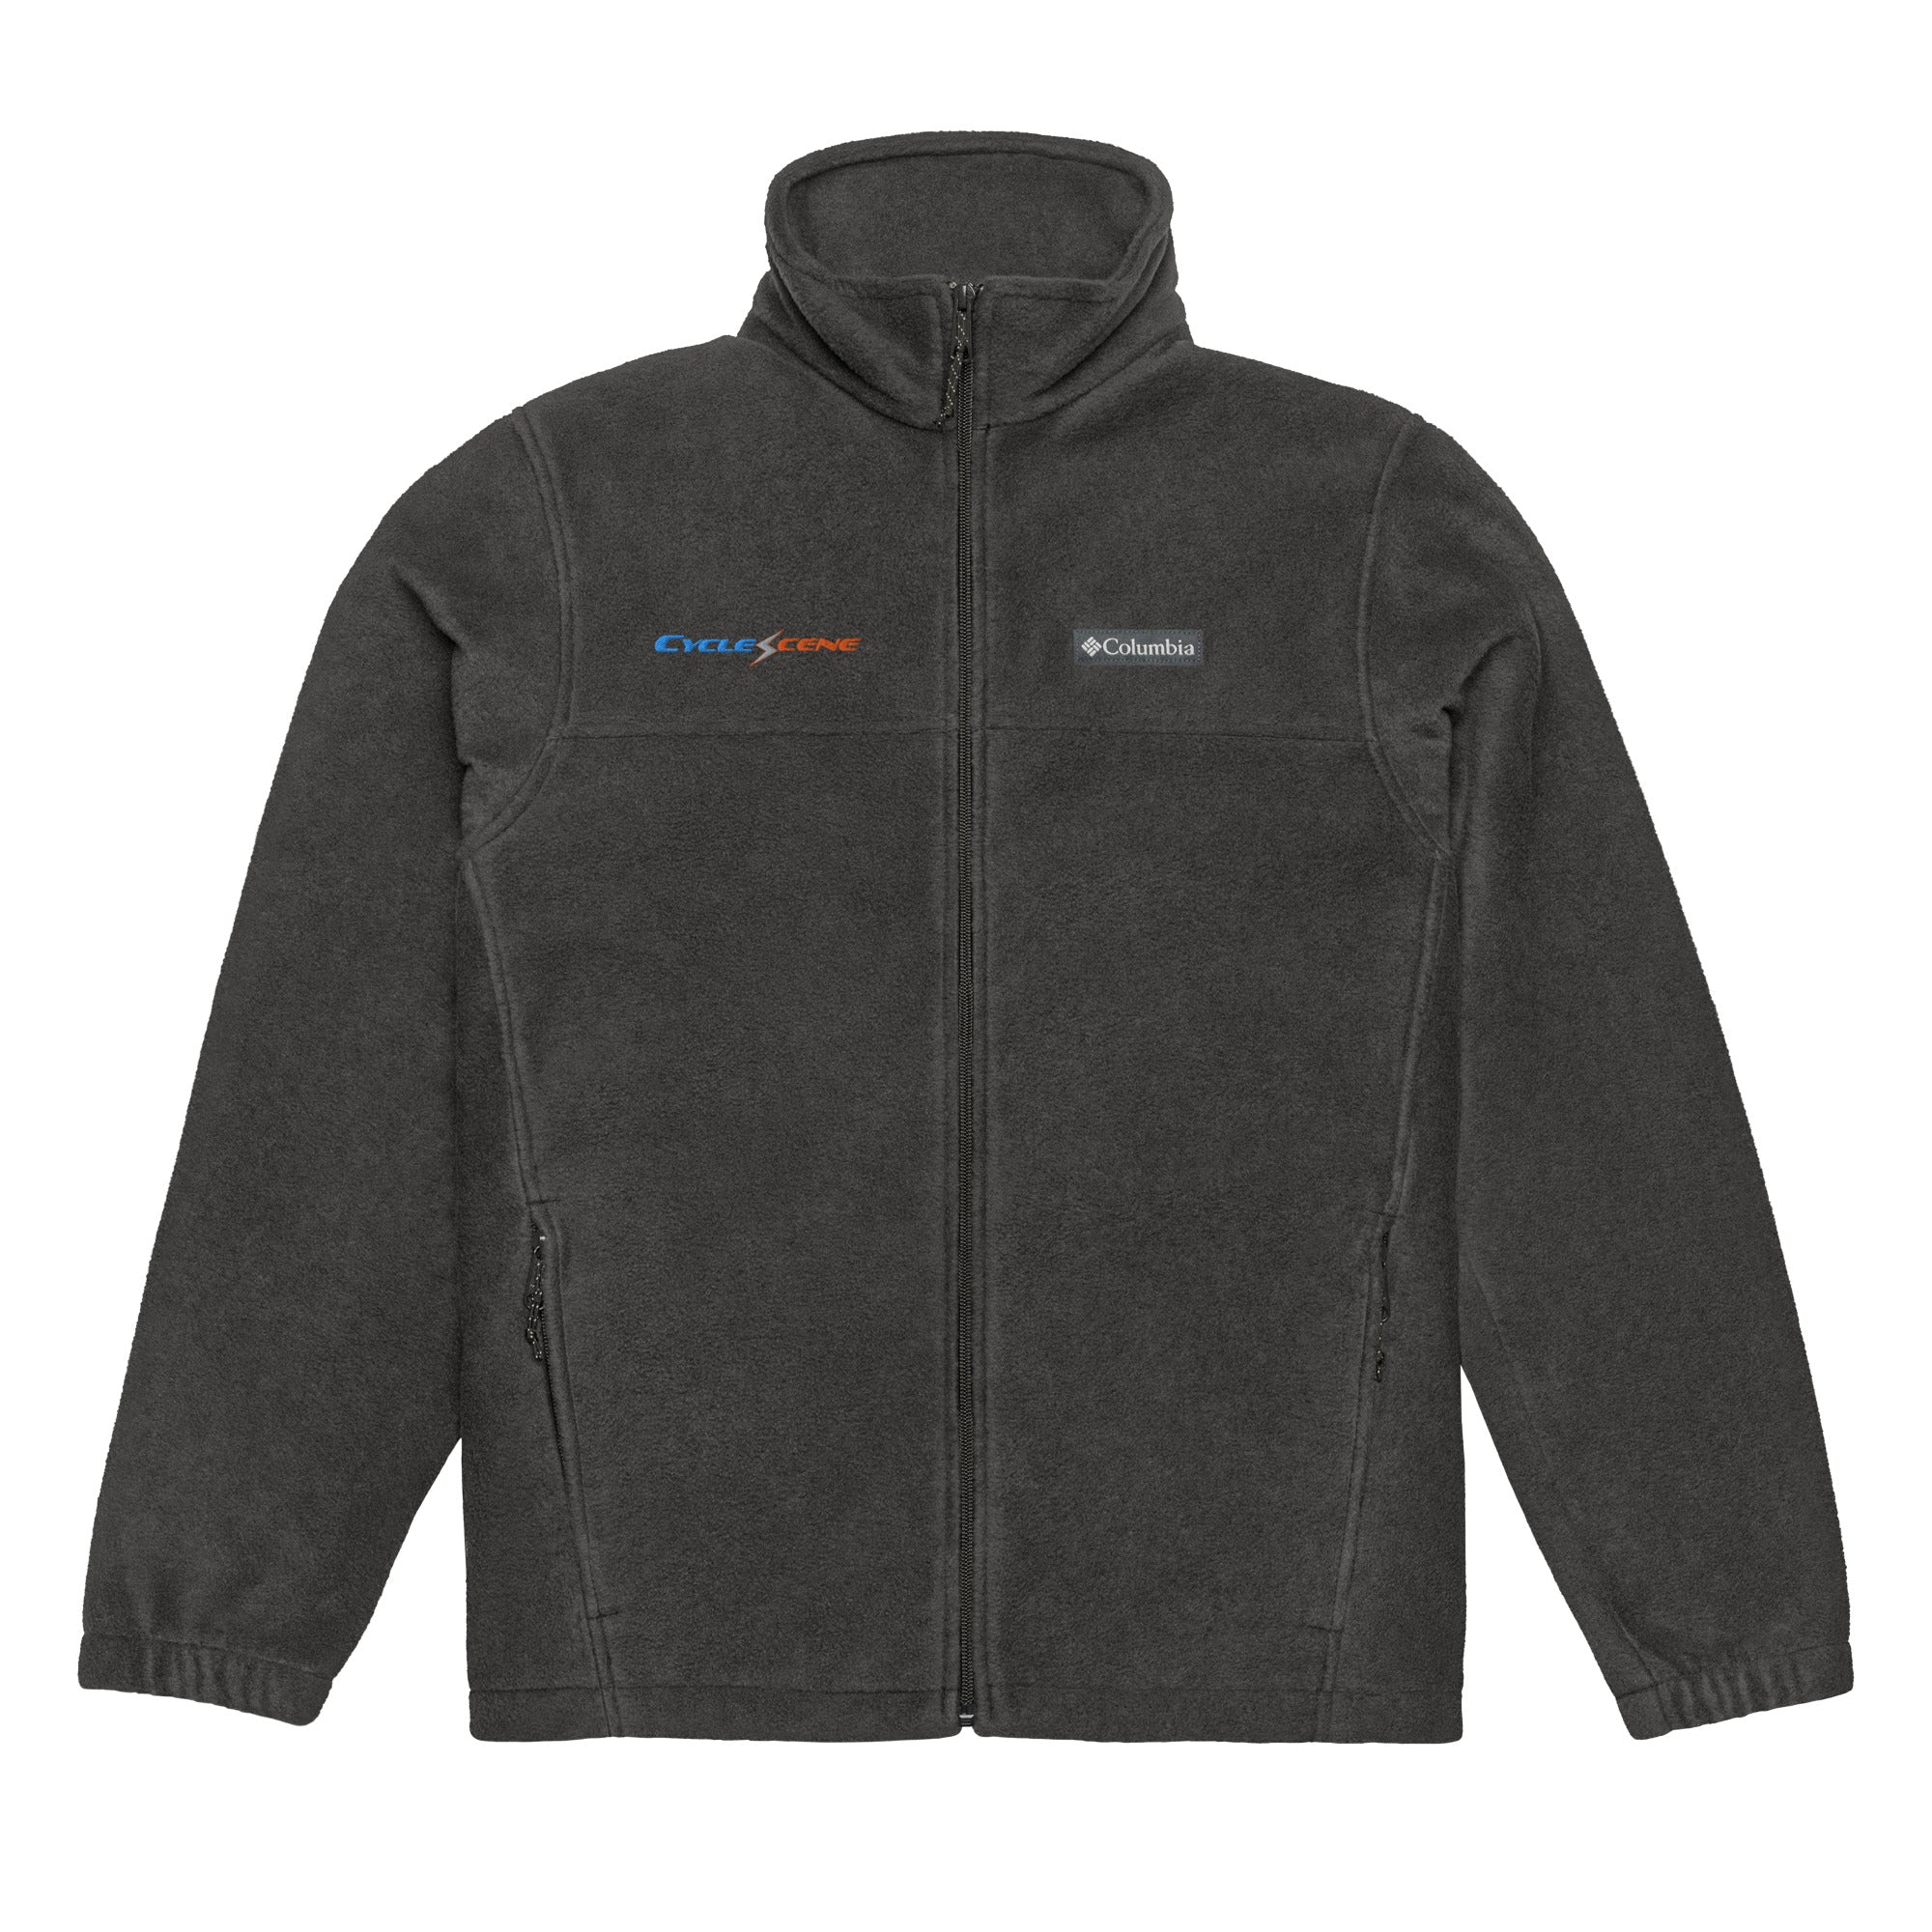 CycleScene/Columbia fleece jacket